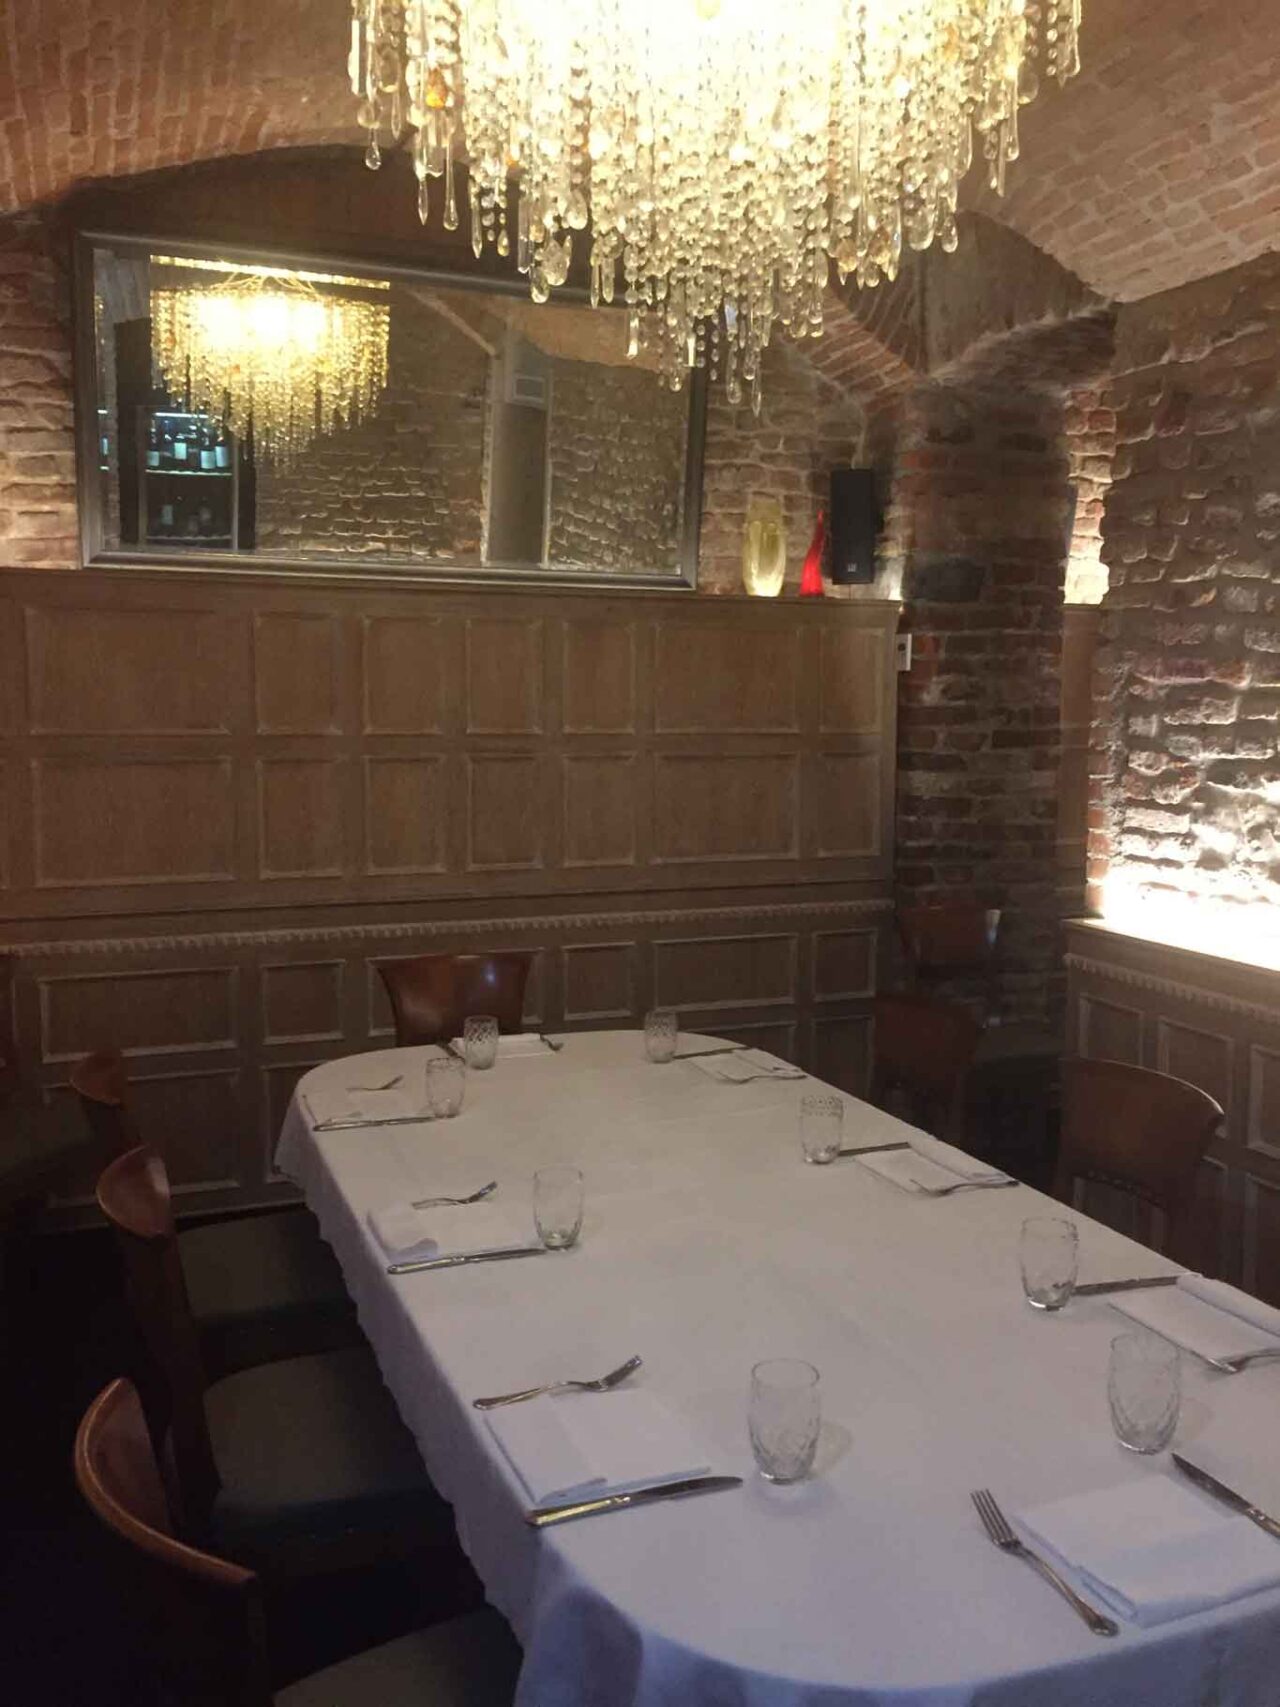 sala cantina ristorante tombon de san marc milano